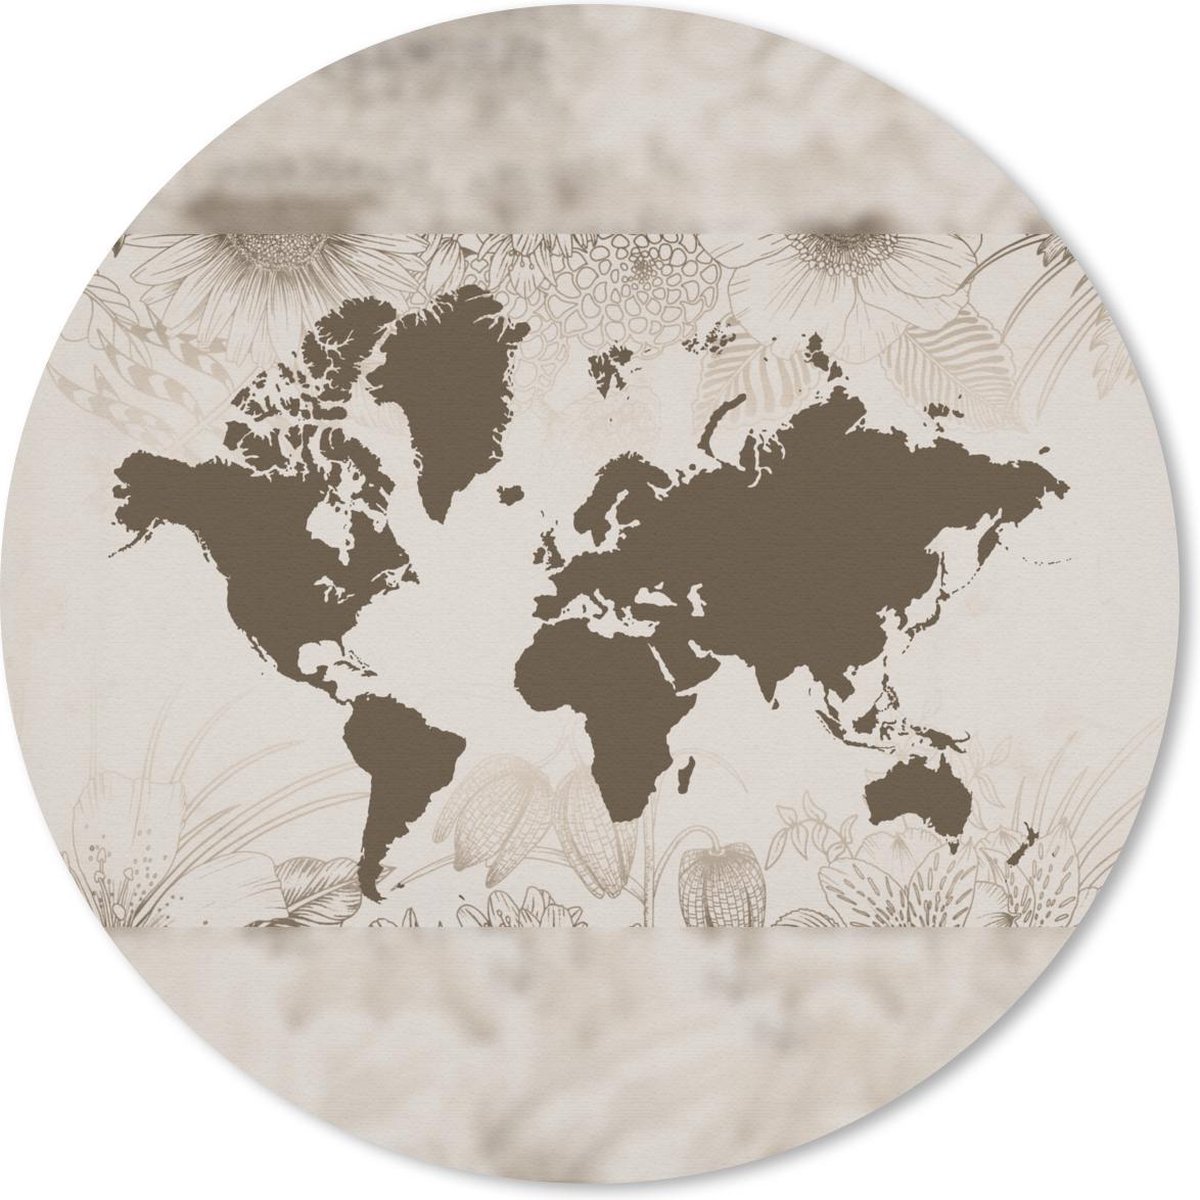 Muismat - Mousepad - Rond - Wereldkaart - Bloemen - Groen - 50x50 cm - Ronde muismat